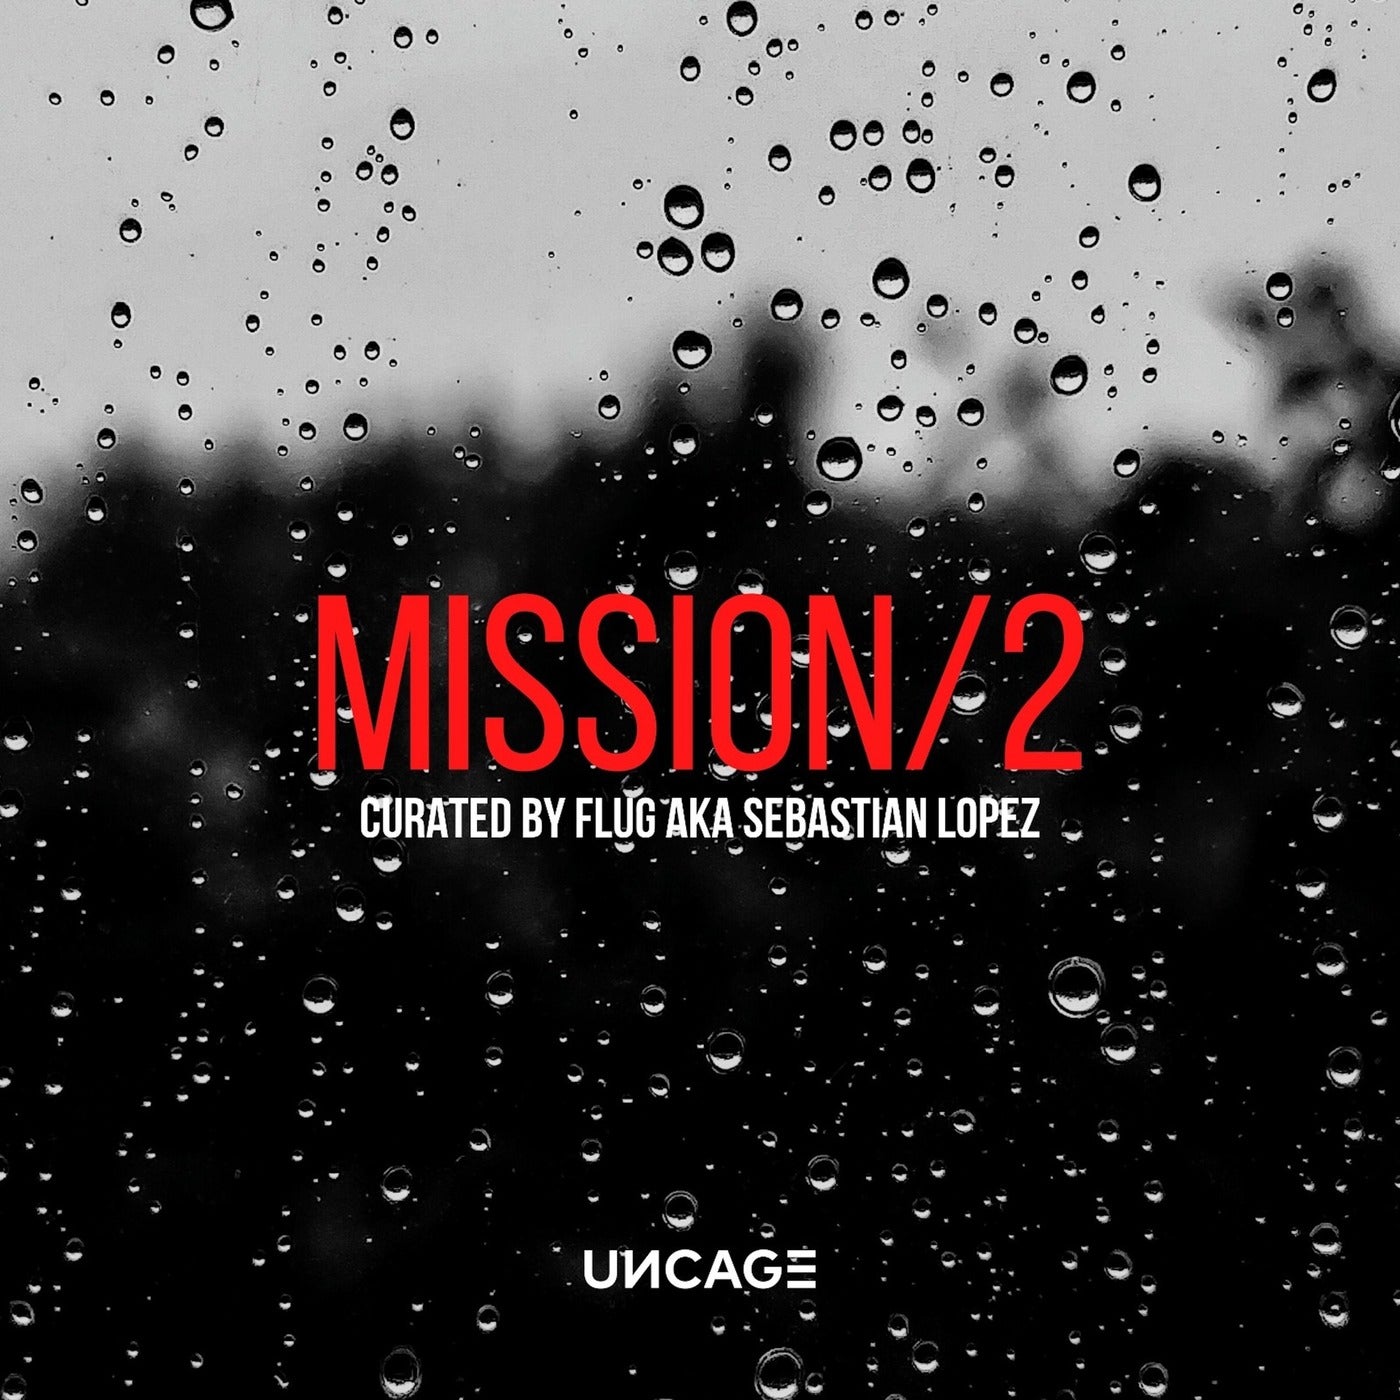 VA – UNCAGE MISSION 02 (CURATED BY FLUG AKA SEBASTIAN LOPEZ) [UNCAGEMISSION02]